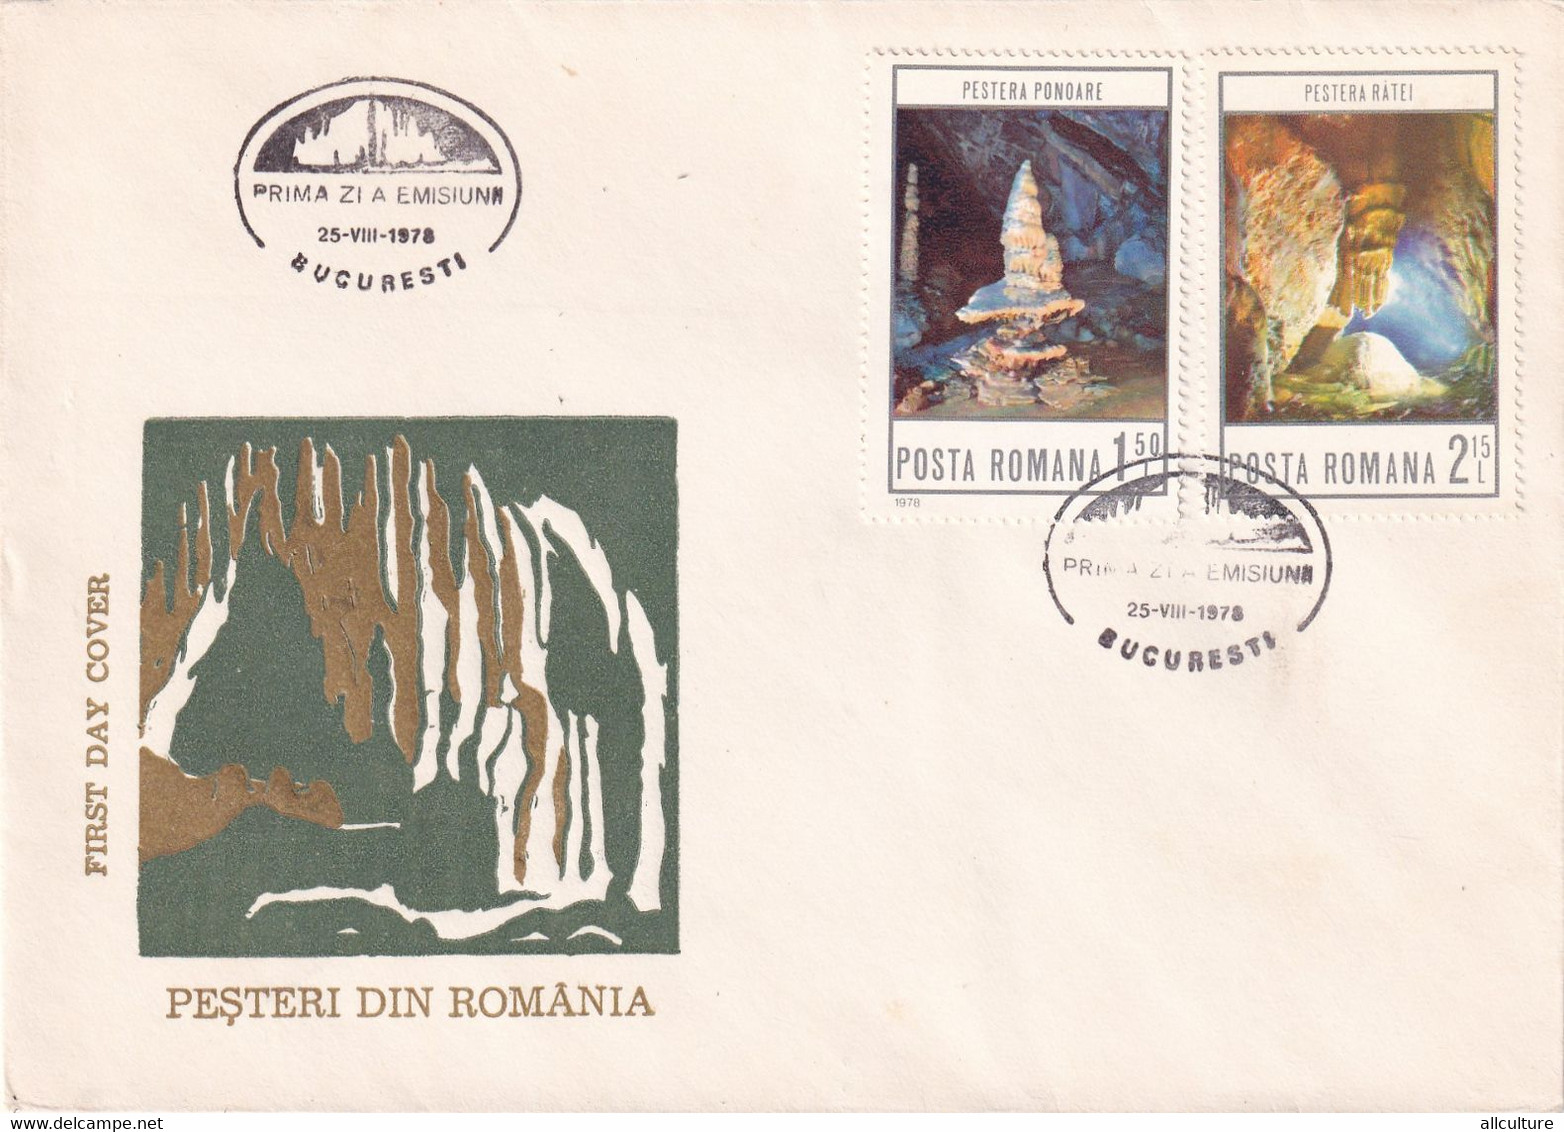 A2741 - Pesteri Din Romania, Prima Zi De Emisiune Bucuresti 1978 Romania 3 Covers FDC - FDC